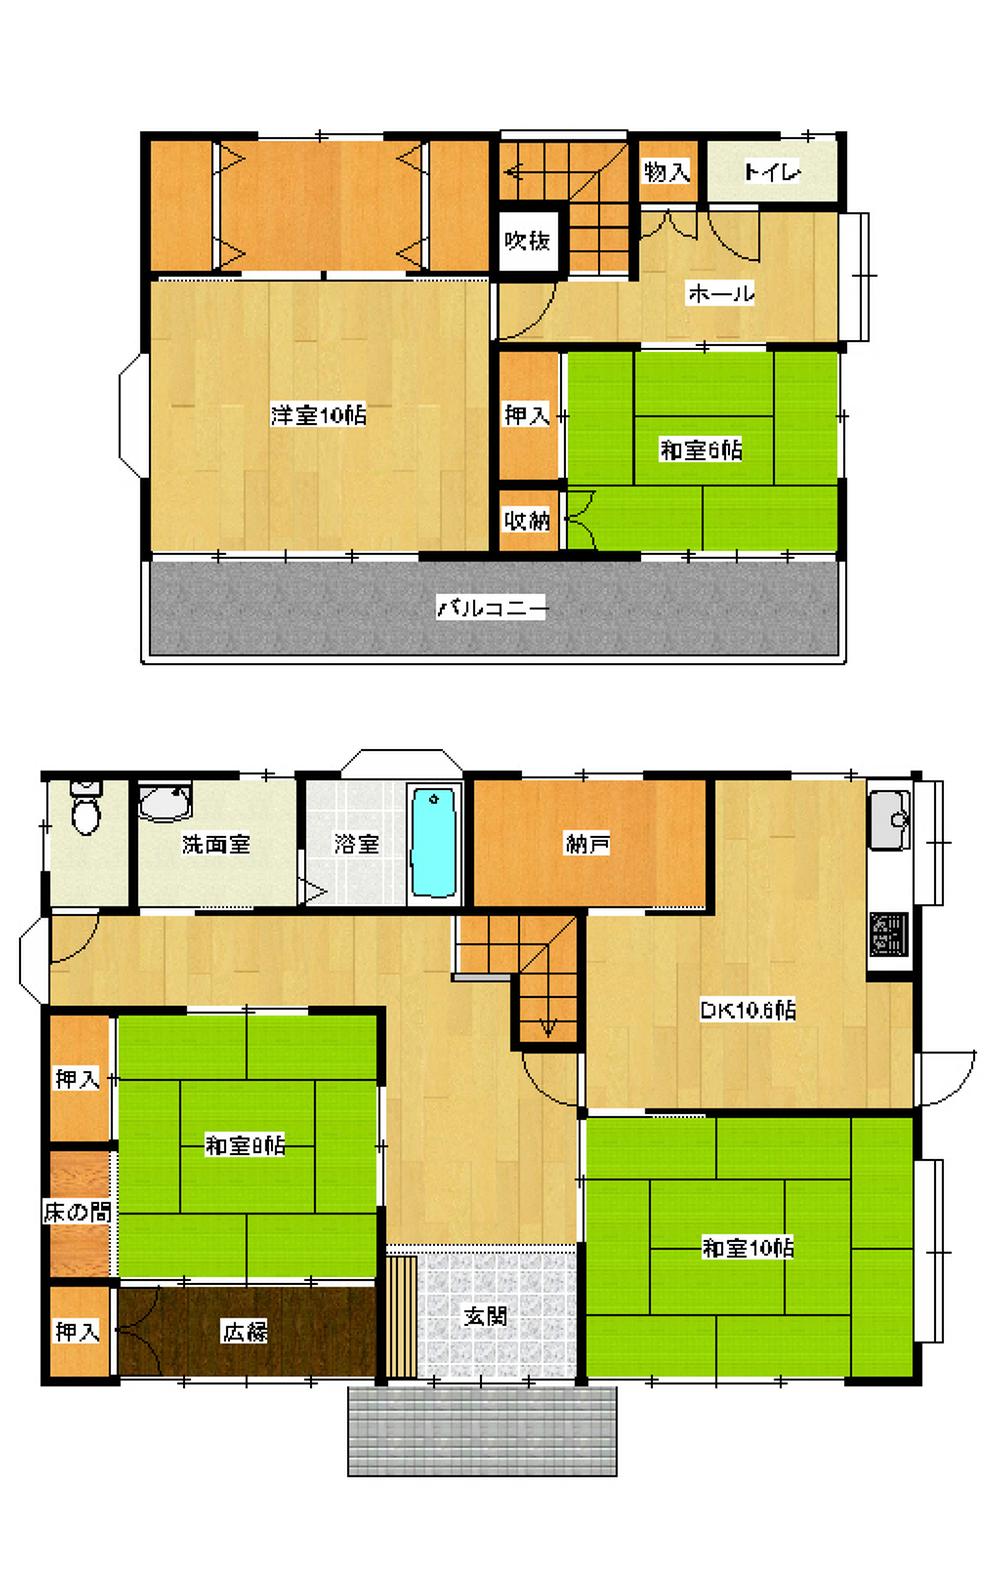 Floor plan. 13 million yen, 4DK, Land area 499.4 sq m , Building area 140.76 sq m